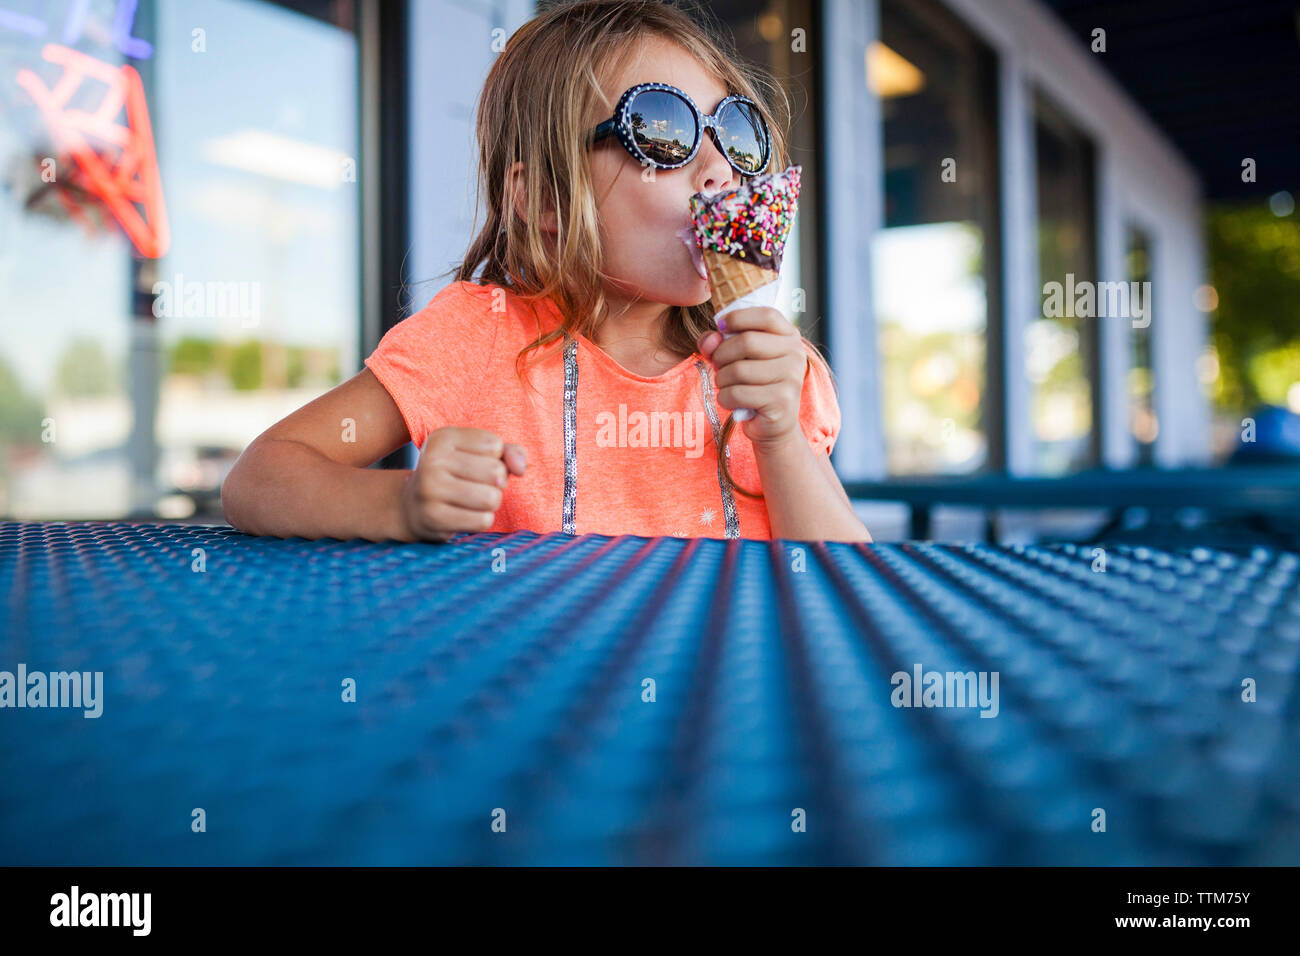 Mädchen in der Sonnenbrille essen Eis in der Eisdiele Stockfotografie -  Alamy